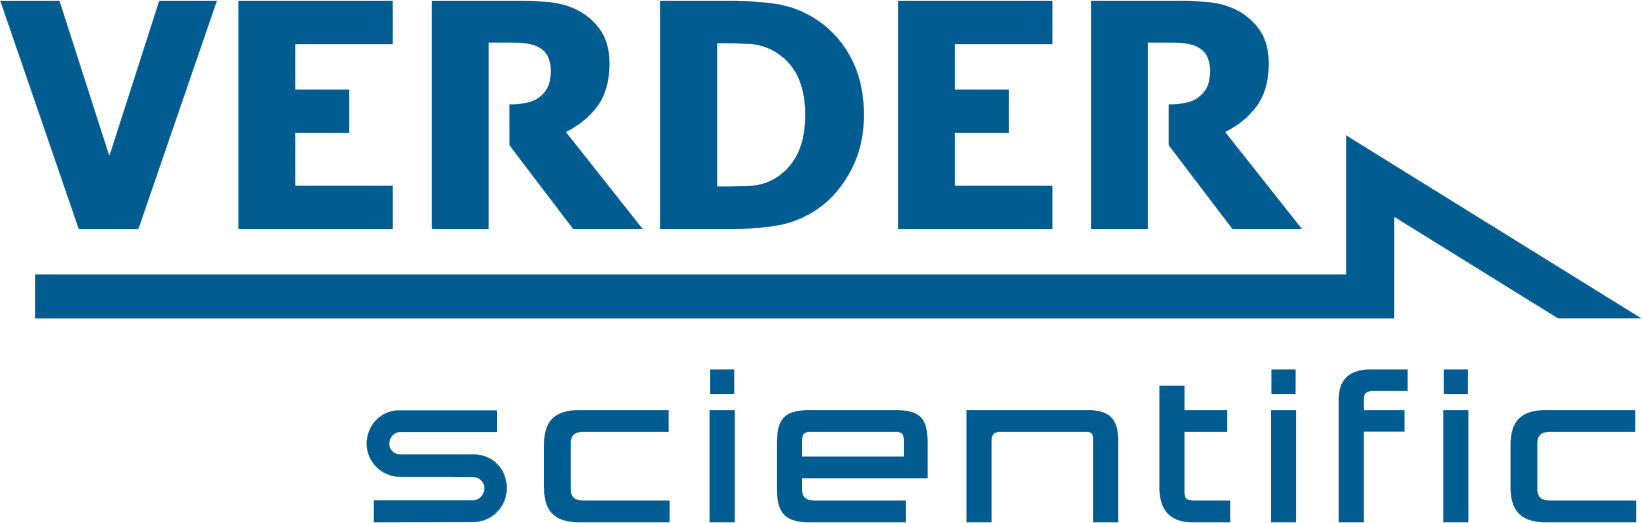 VERDER logo